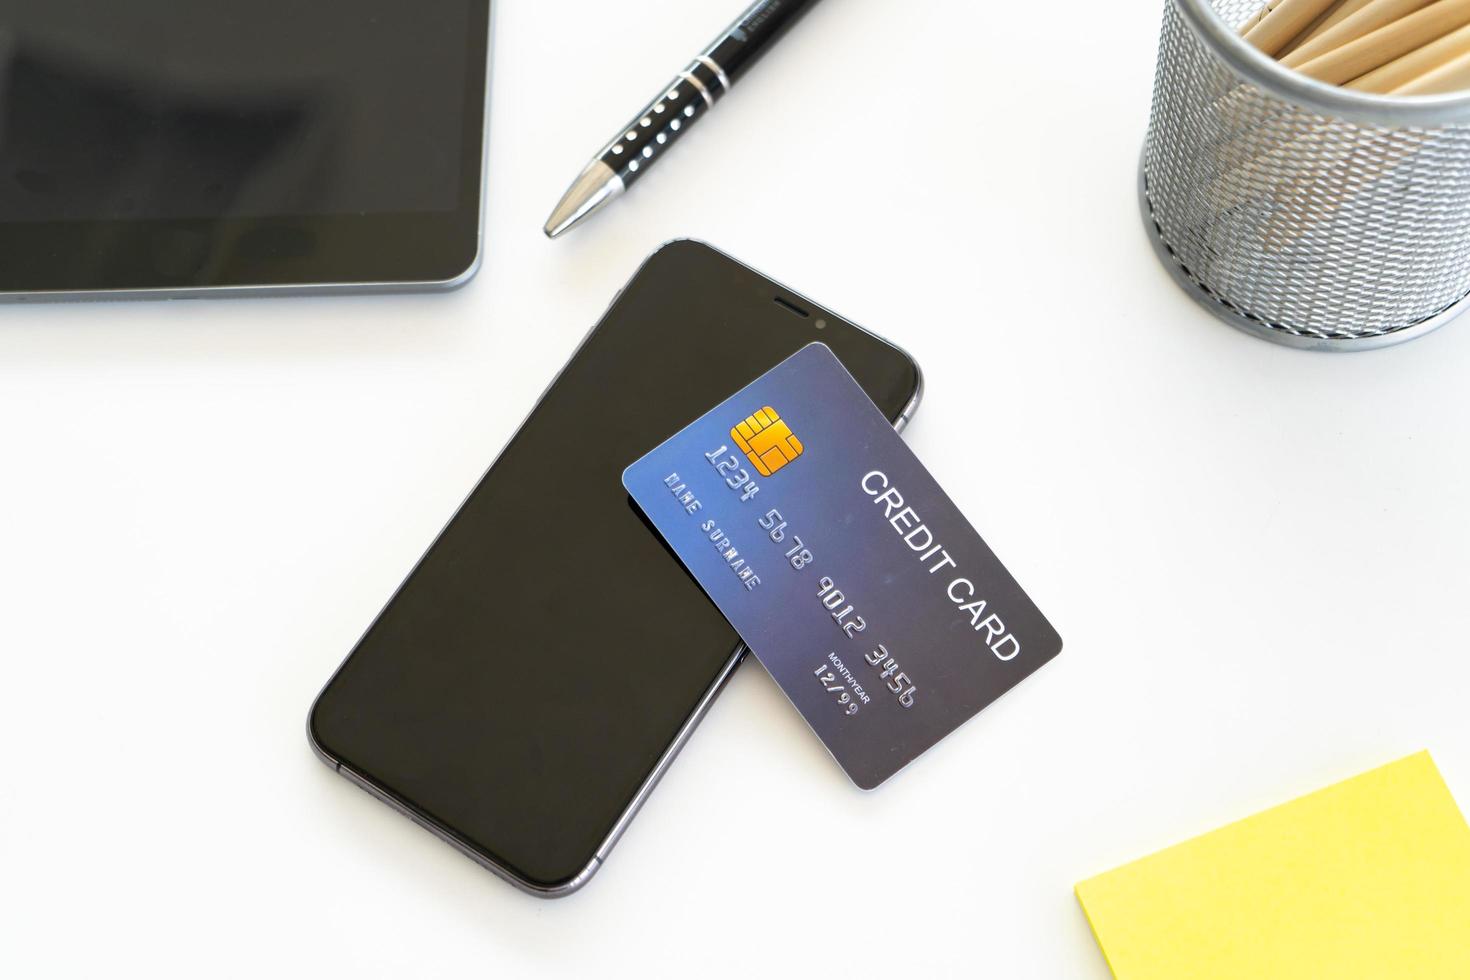 smartphone avec carte de crédit sur le bureau, concept de magasinage en ligne photo